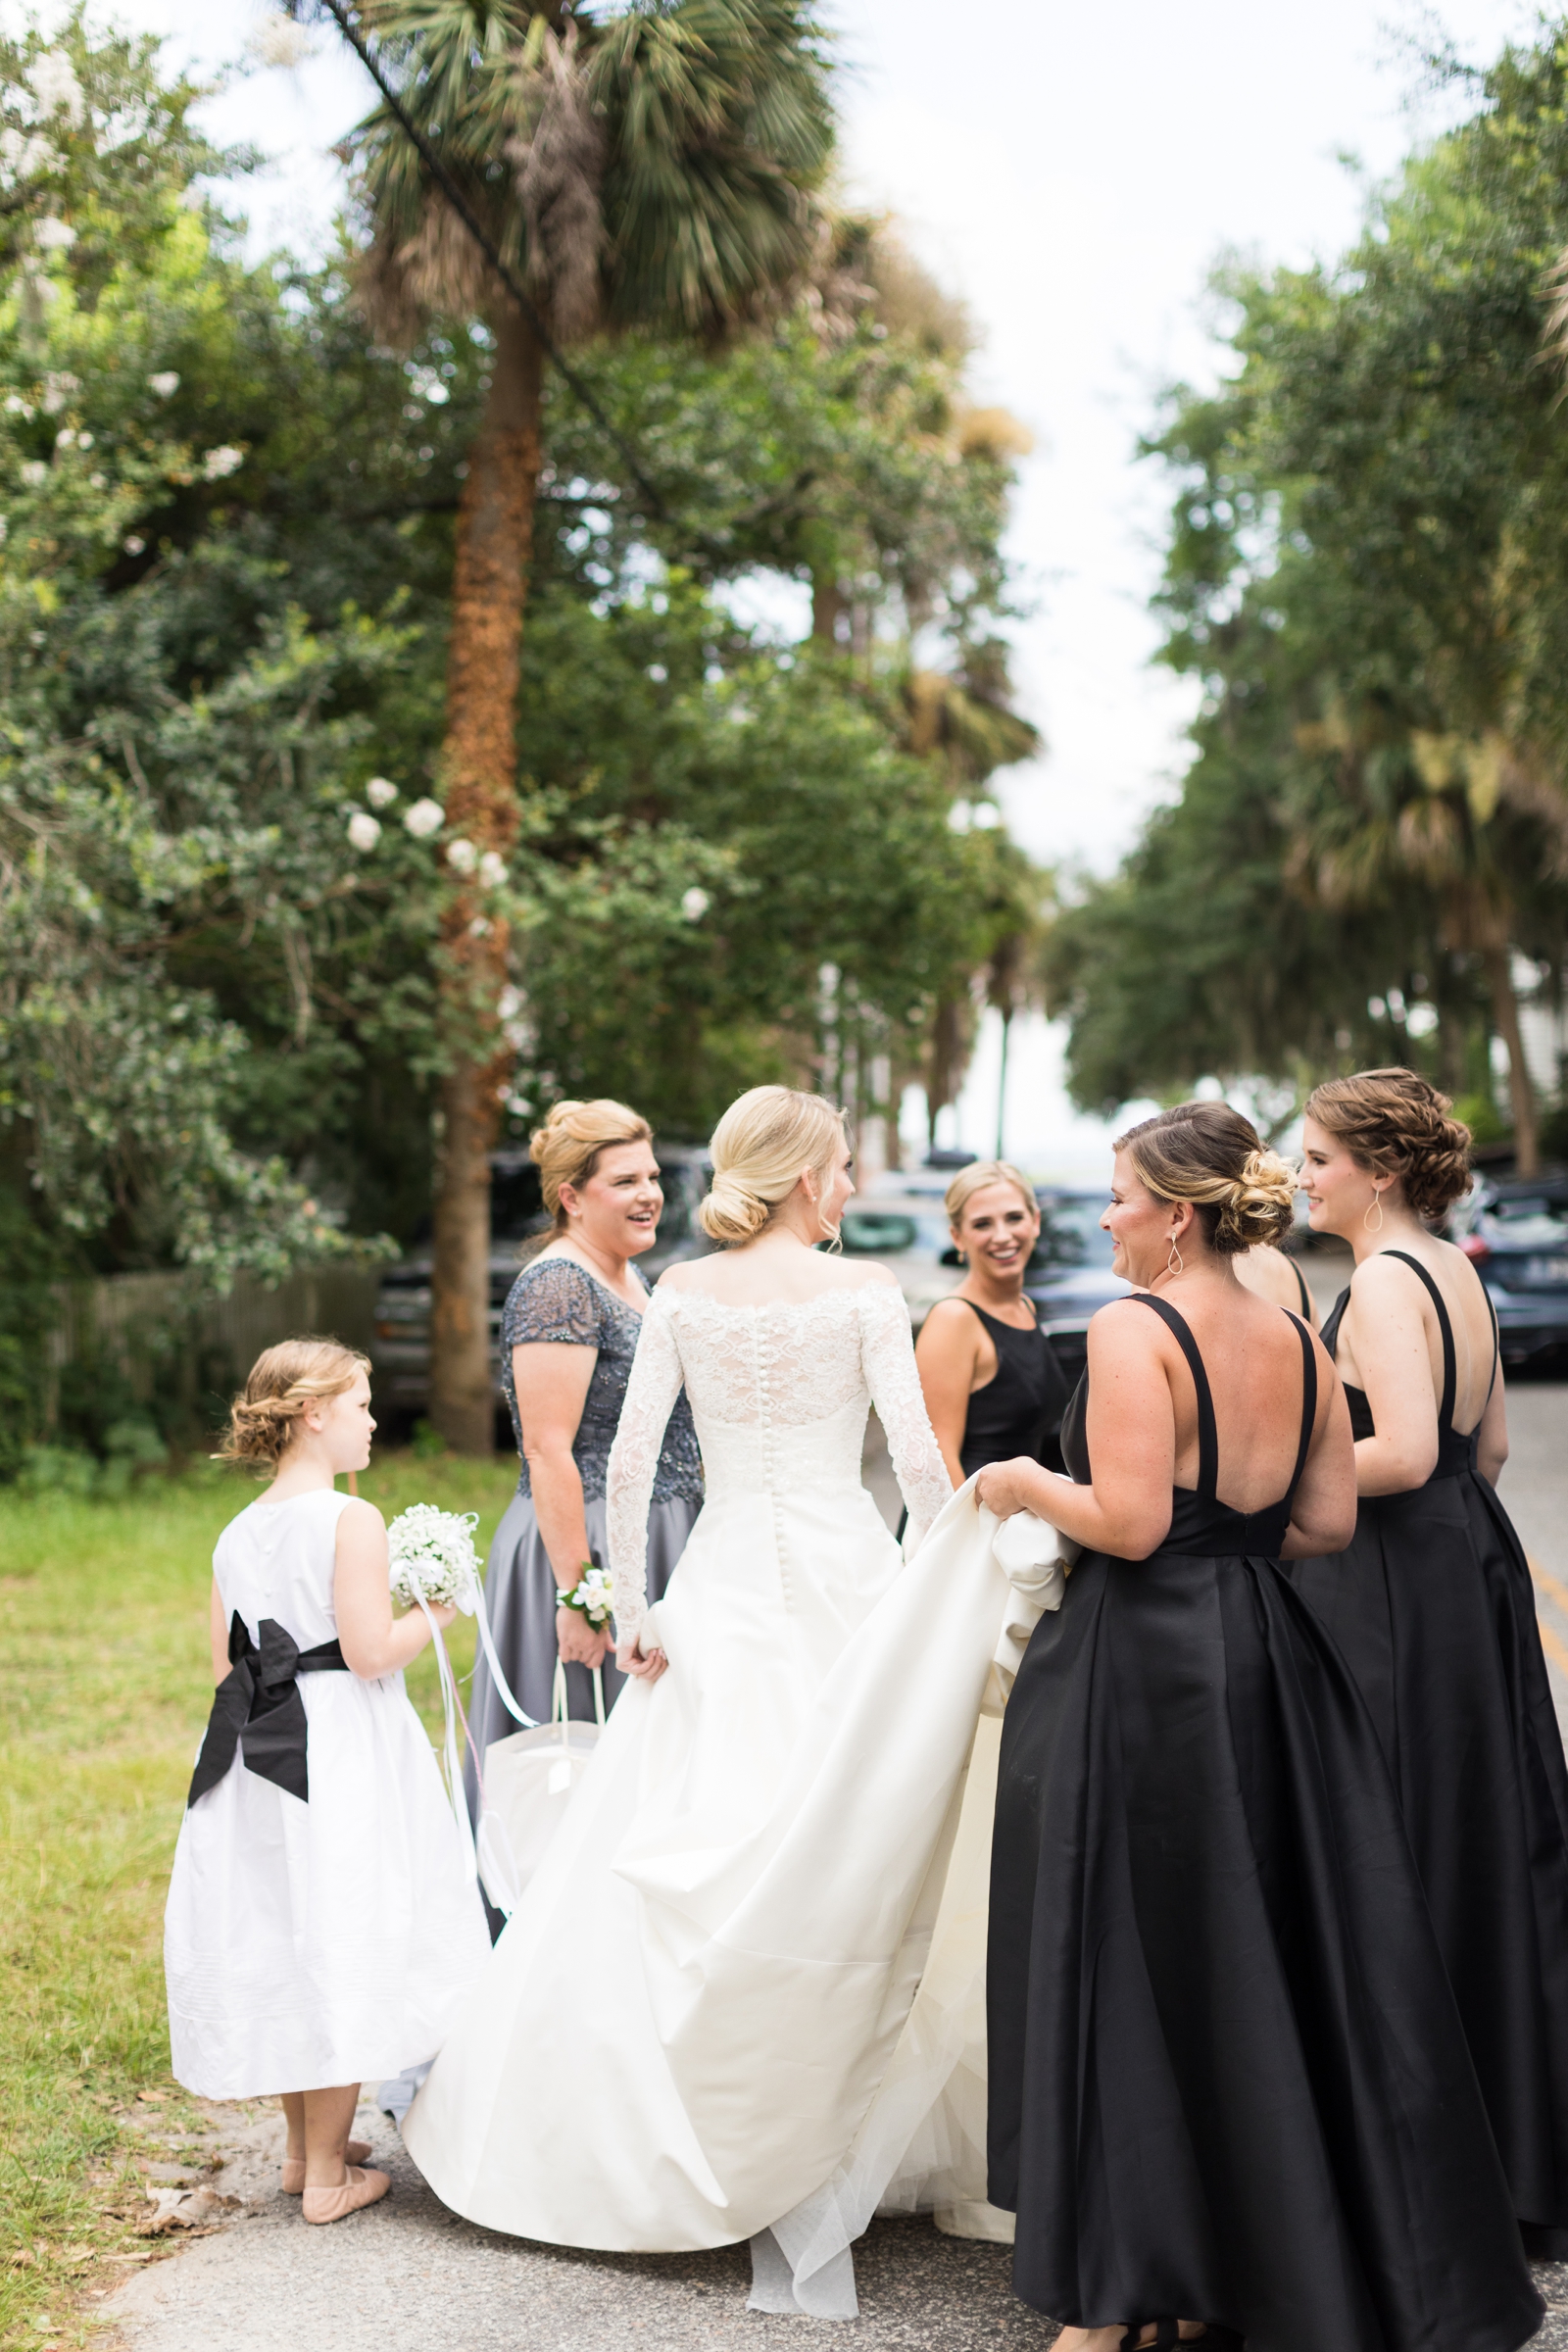 Dataw Island Club Wedding - Sydney Bruton Photography